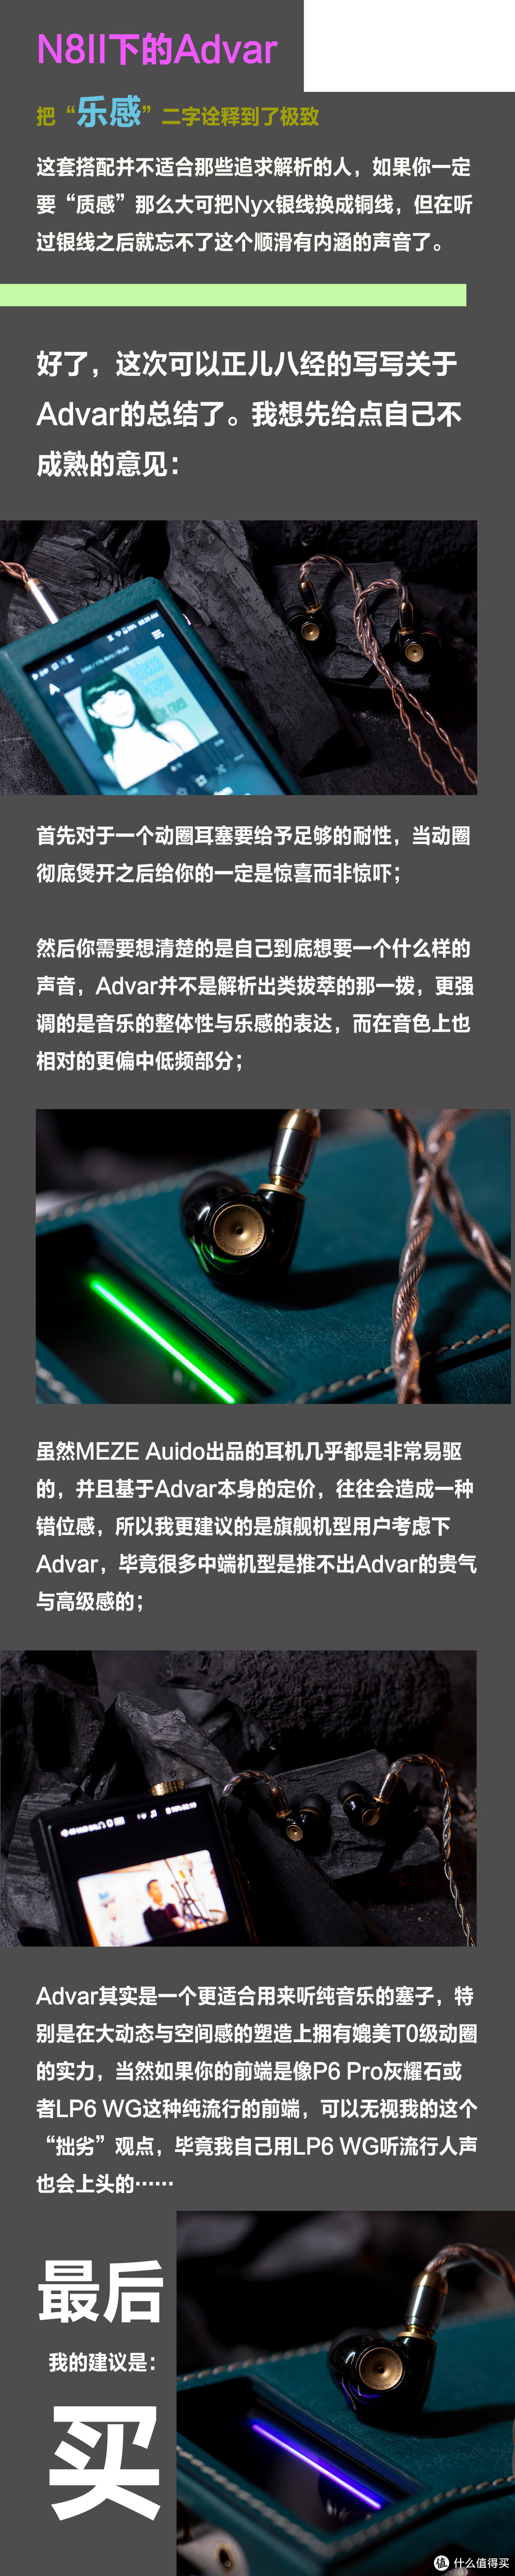 MEZE Audio ADVAR｜一条优秀动圈该有的样子